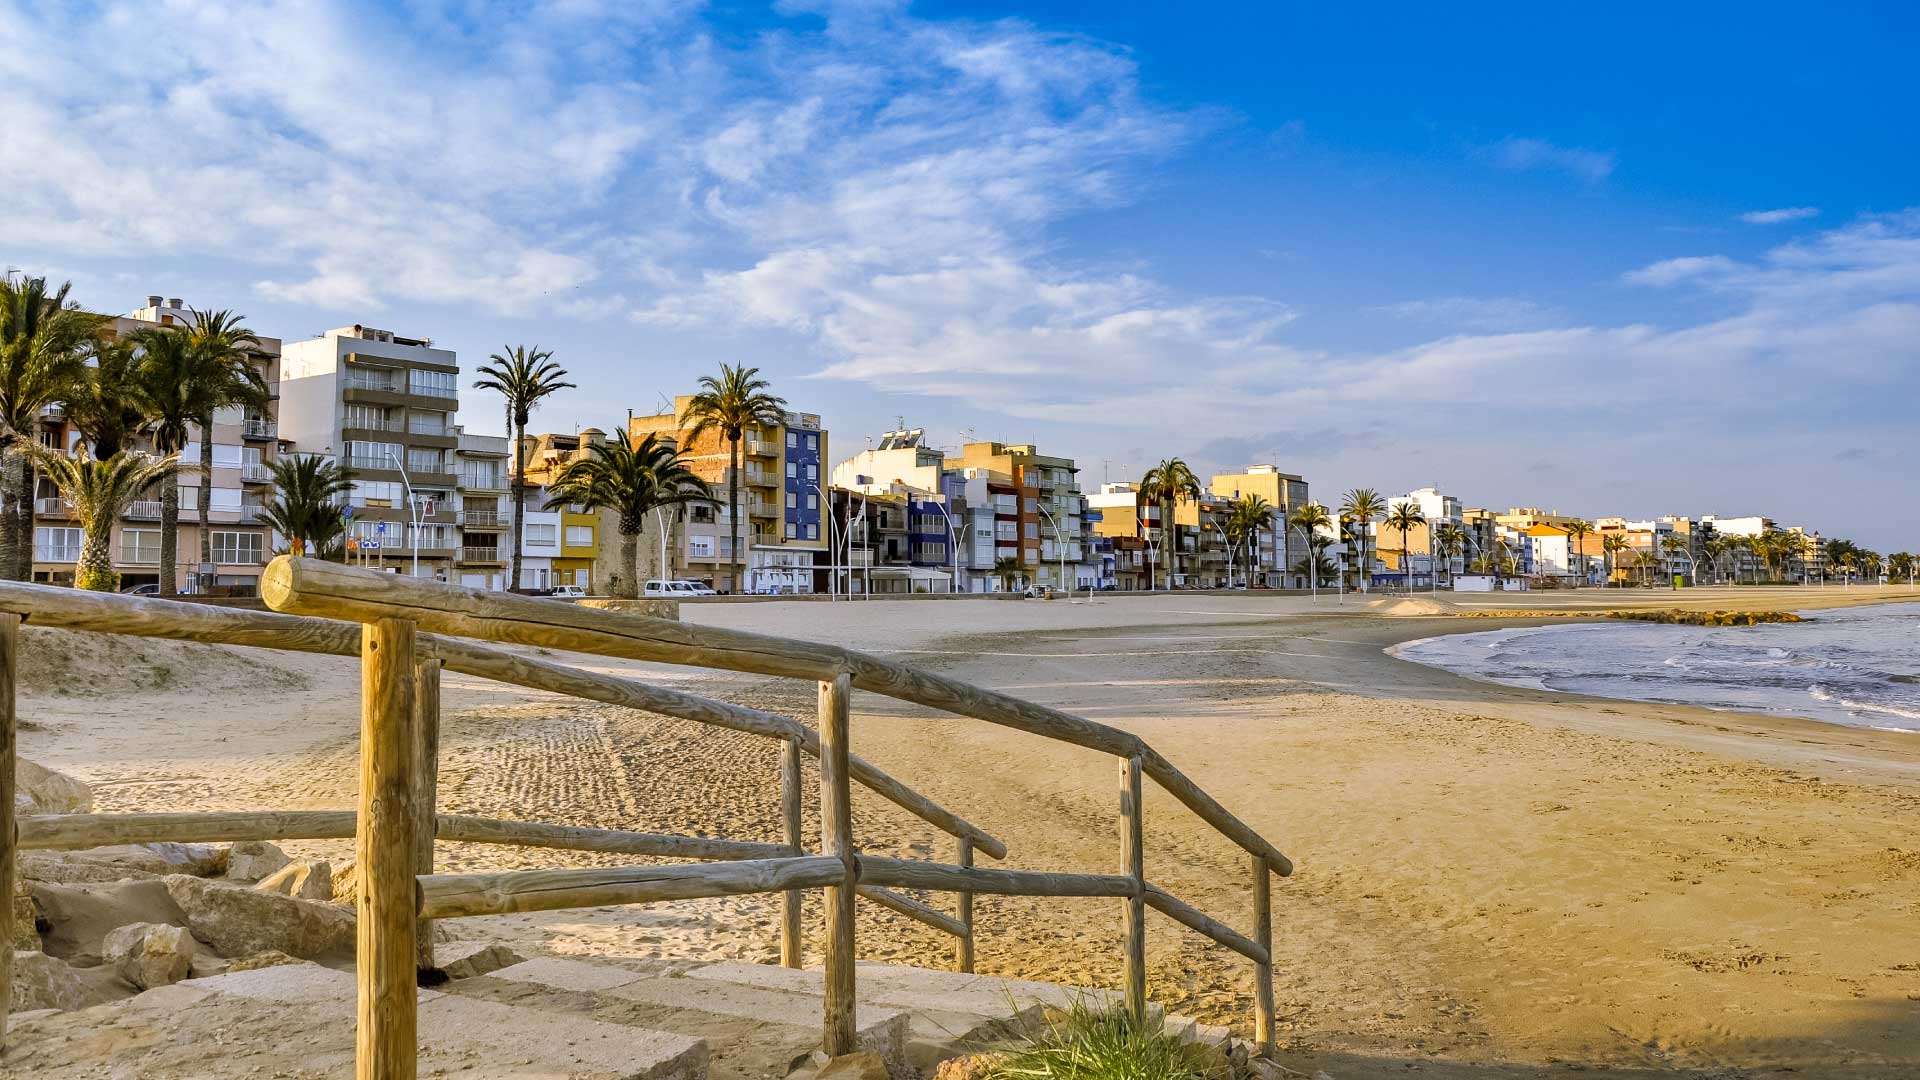 Playa Torrenostra